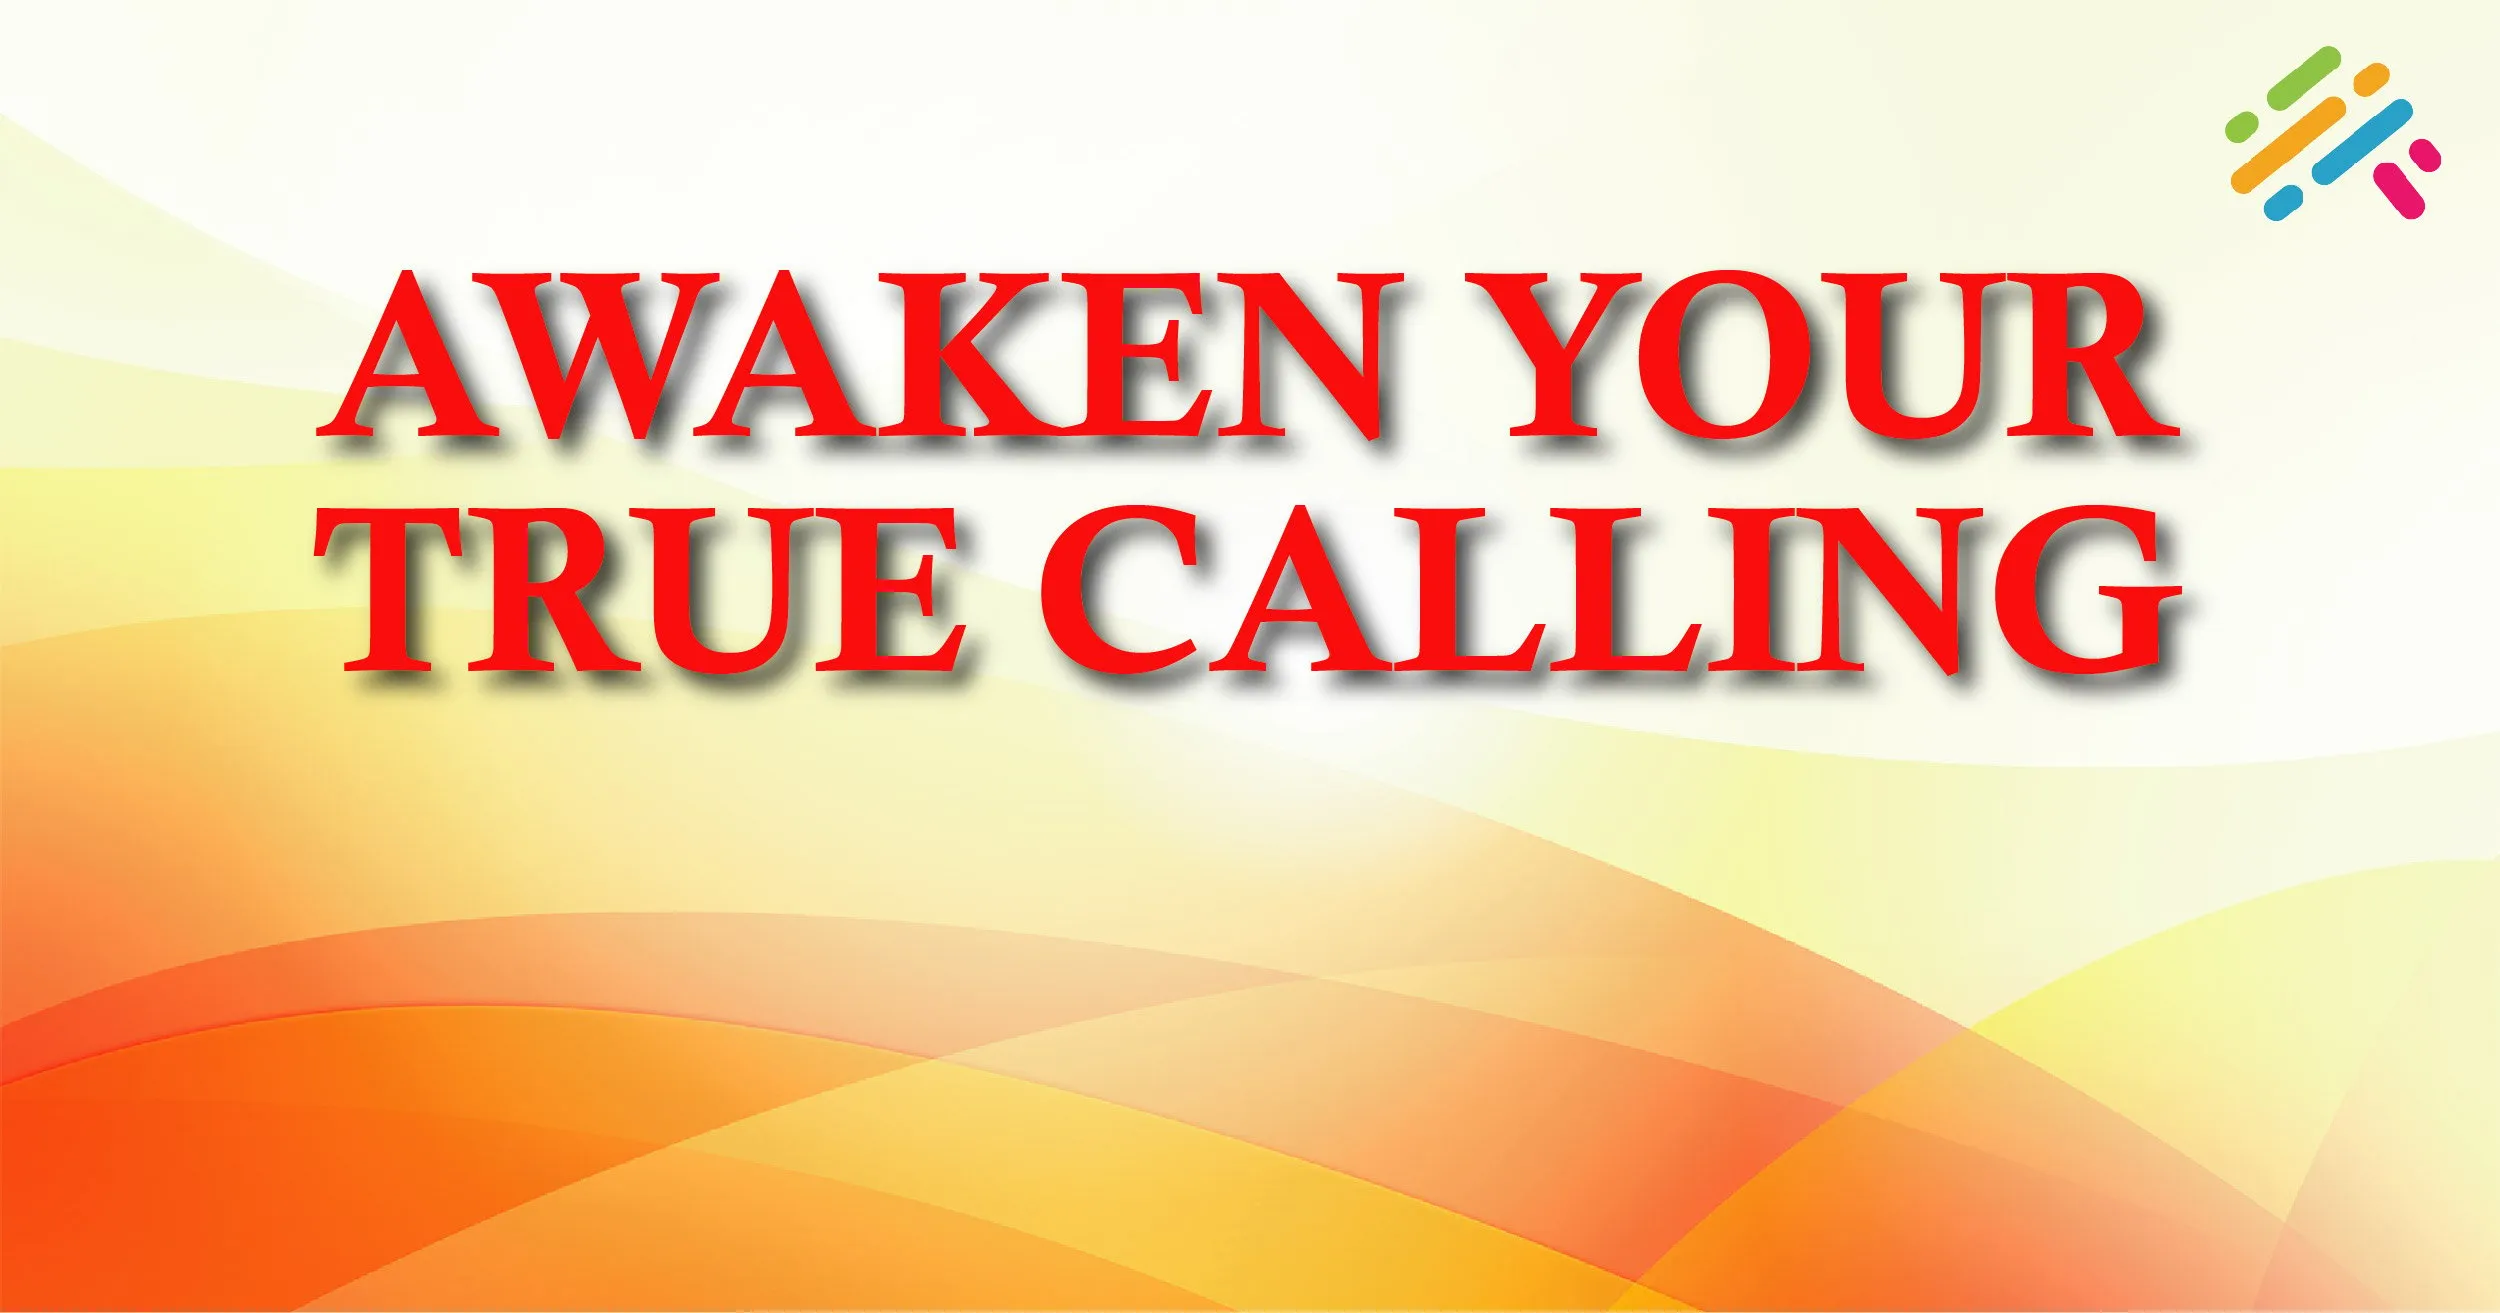 How to Awaken Your True Calling?